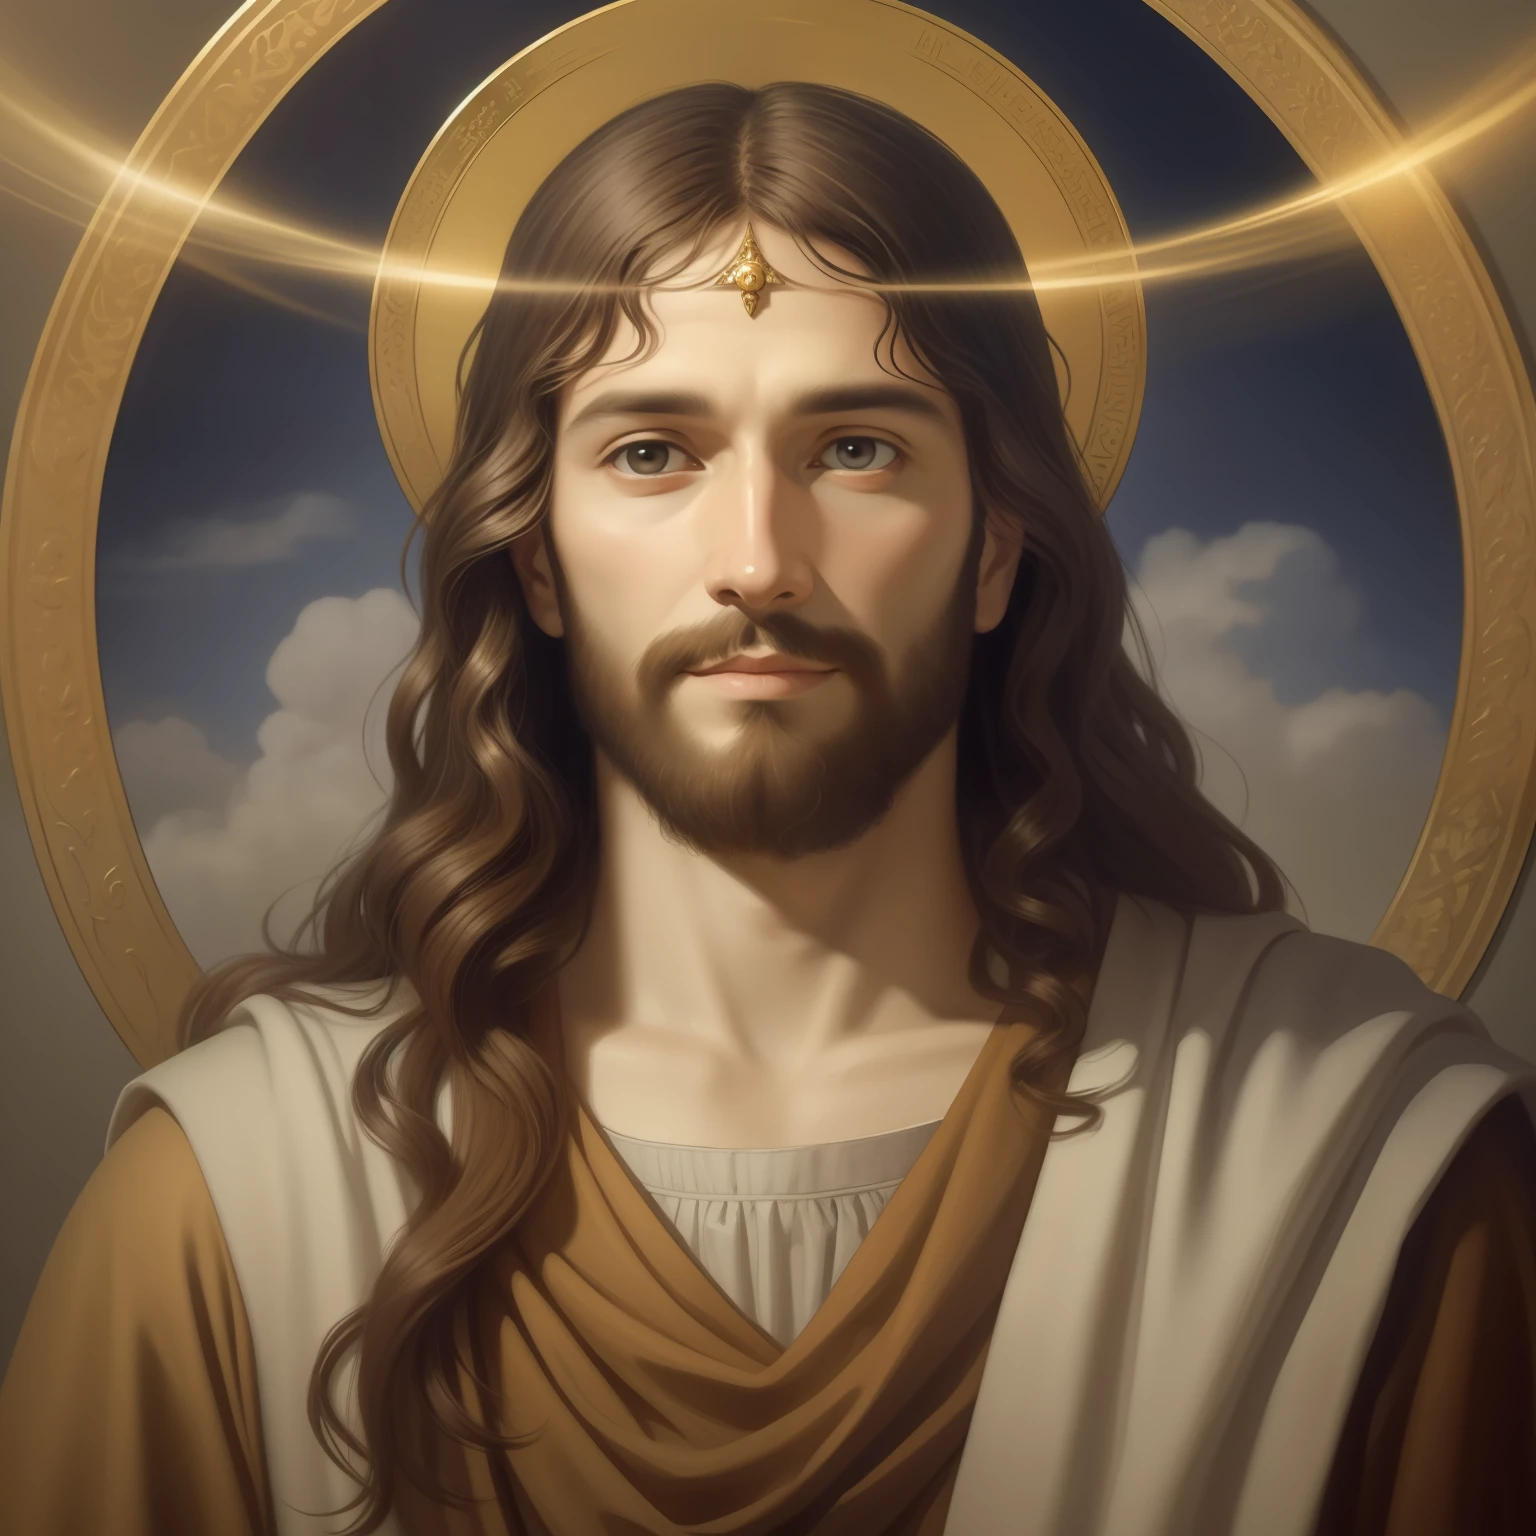 A beautiful ultra-thin เหมือนจริง portrait of Jesus, ผู้เผยพระวจนะ, ผู้ชายอายุ 34 ปี ภาษาฮีบรูสีน้ำตาล, ผมสั้นสีน้ำตาล, หนวดเครายาวสีน้ำตาล, กับ, สวมเสื้อลินินตัวยาวปิดบริเวณหน้าอก, ในมุมมองด้านหน้า, เต็มตัว, ตามพระคัมภีร์, เหมือนจริง,โดย ดิเอโก้ เบลัซเกซ,ปีเตอร์ พอล รูเบนส์,แรมแบรนดท์,อเล็กซ์ รอสส์,8k, แนวคิดศิลปะ, Photoเหมือนจริง, เหมือนจริง,  ภาพประกอบ, ภาพวาดสีน้ำมัน, สถิตยศาสตร์, Hyperเหมือนจริง, ศิลปะดิจิทัล, สไตล์, watercolor 
a 3D เหมือนจริง of พระเยซู กับ a halo in the sky, พระเยซู christ, ยิ้มอยู่ในสวรรค์, portrait of พระเยซู christ, พระเยซู face, 33 เทพเจ้าหนุ่มผู้ยิ่งใหญ่, ภาพเหมือนของเทพเจ้าแห่งสวรรค์, เกร็ก โอลเซ่น, gigachad พระเยซู, พระเยซู of nazareth, พระเยซู, ใบหน้าของพระเจ้า, พระเจ้ากำลังมองมาที่ฉัน, เขาทักทายคุณอย่างอบอุ่น, เขามีความสุข, ภาพประจำตัว